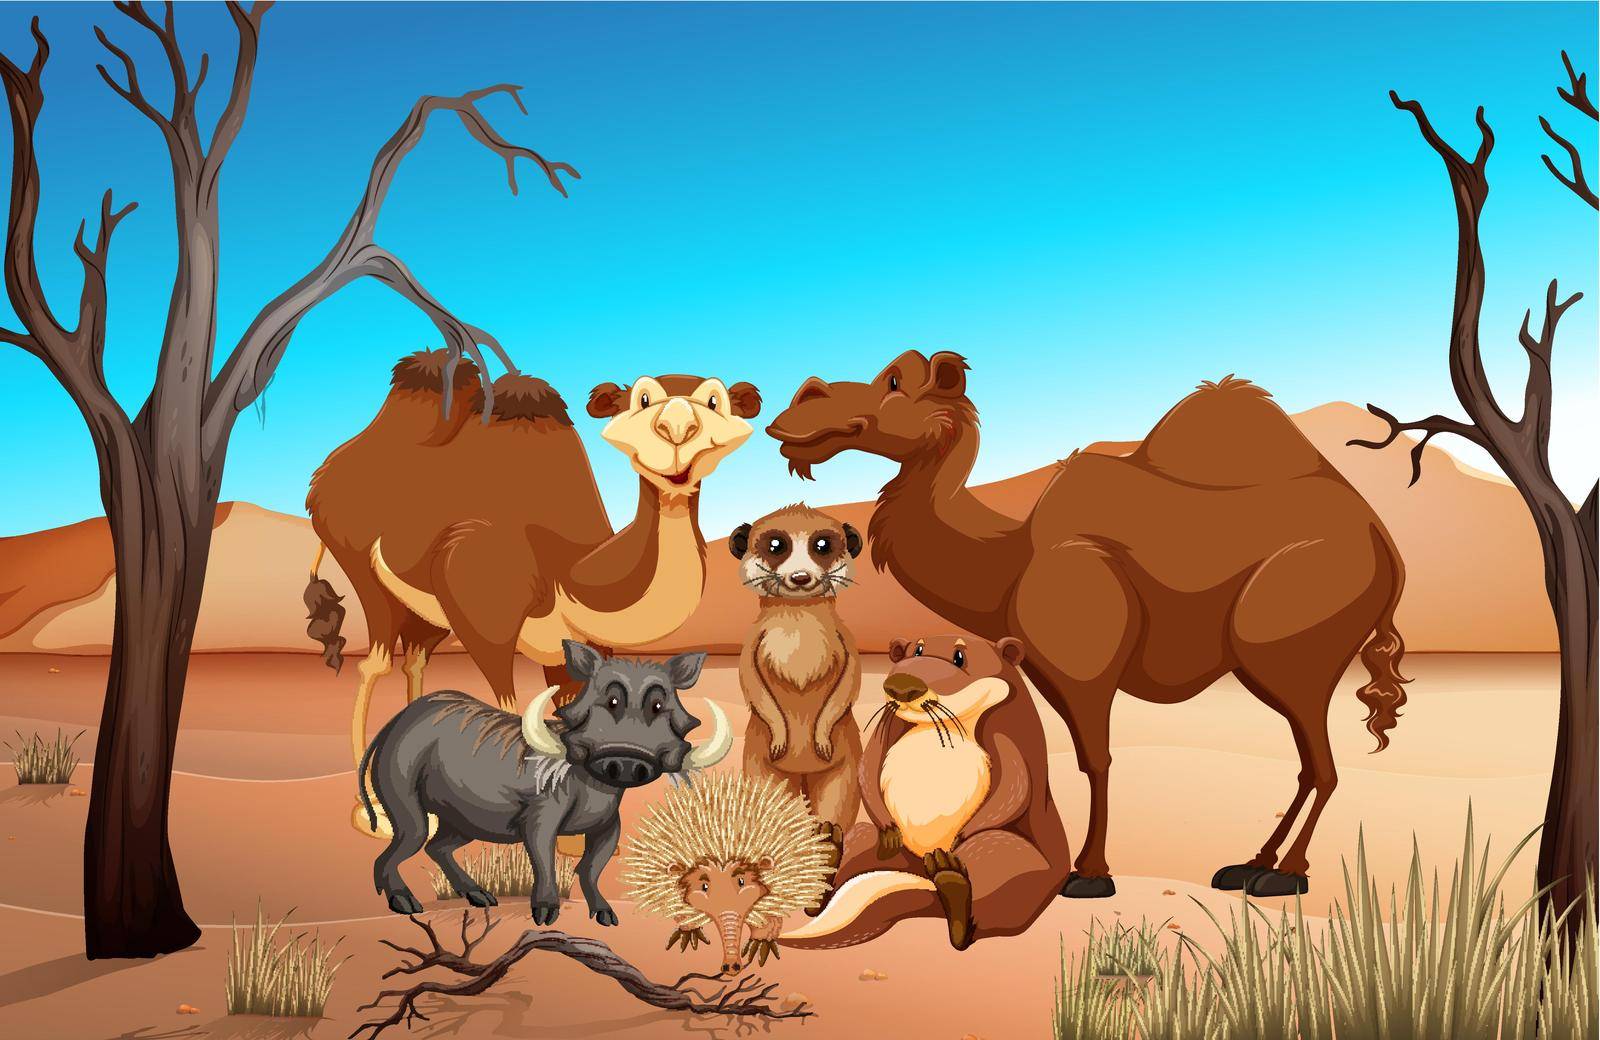 Wild animals in the savanna field illustration